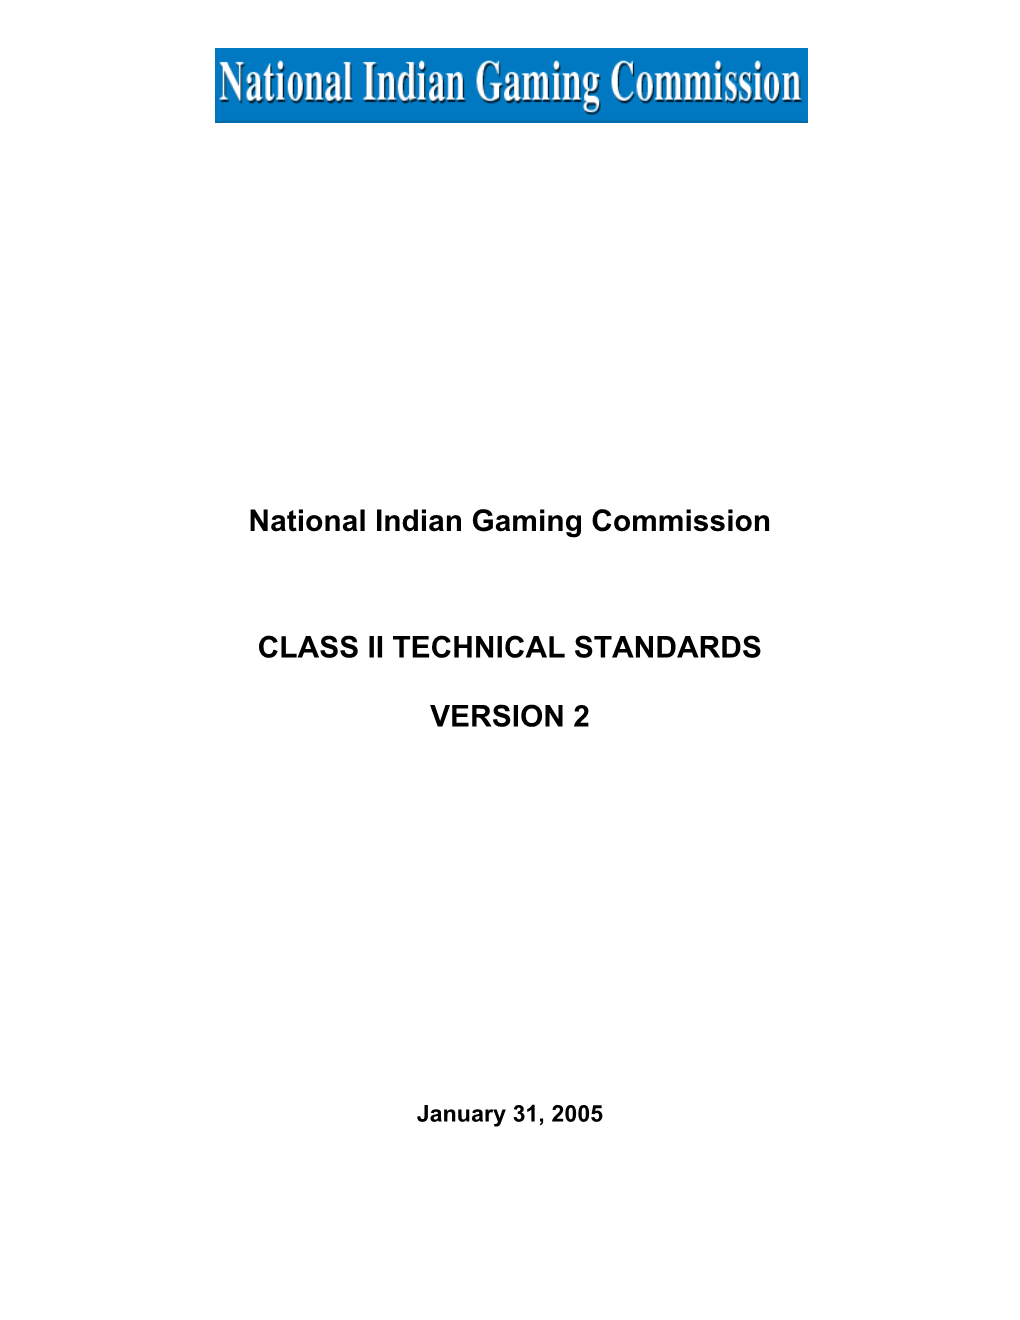 Class Ii Technical Standards Version 0.1